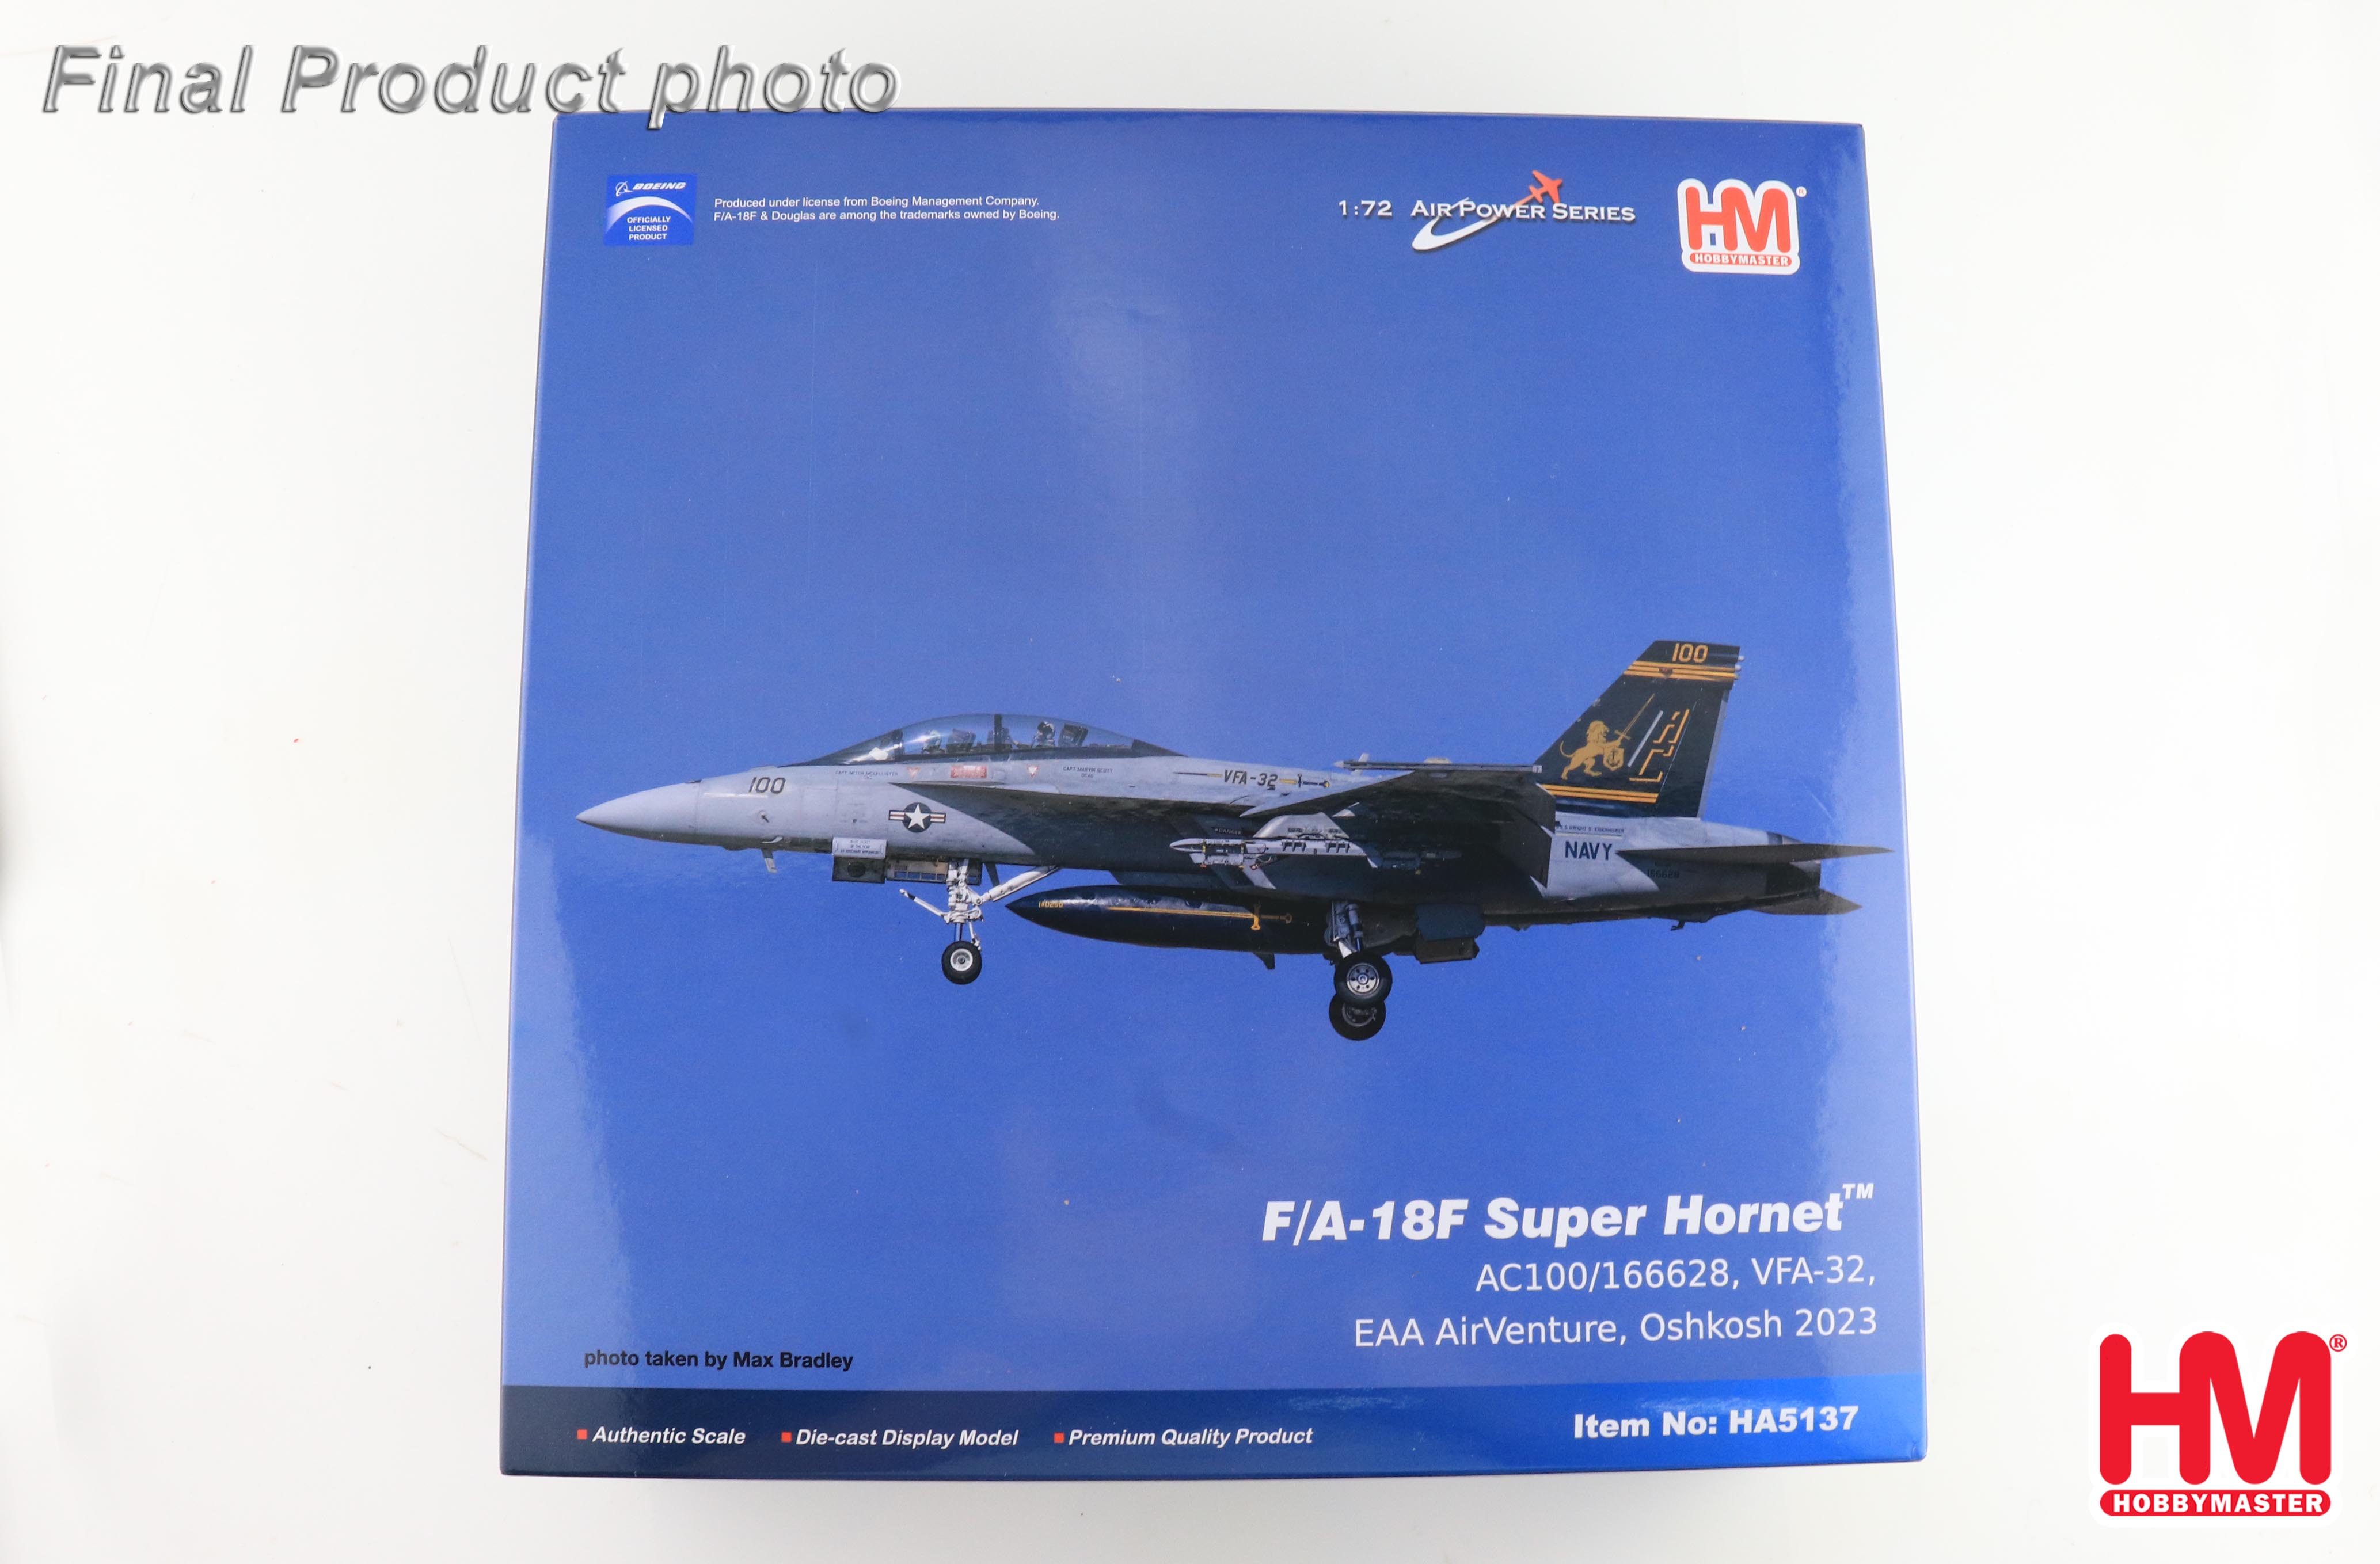 F/A-18F Super Hornet AC100/166628, VFA-32 